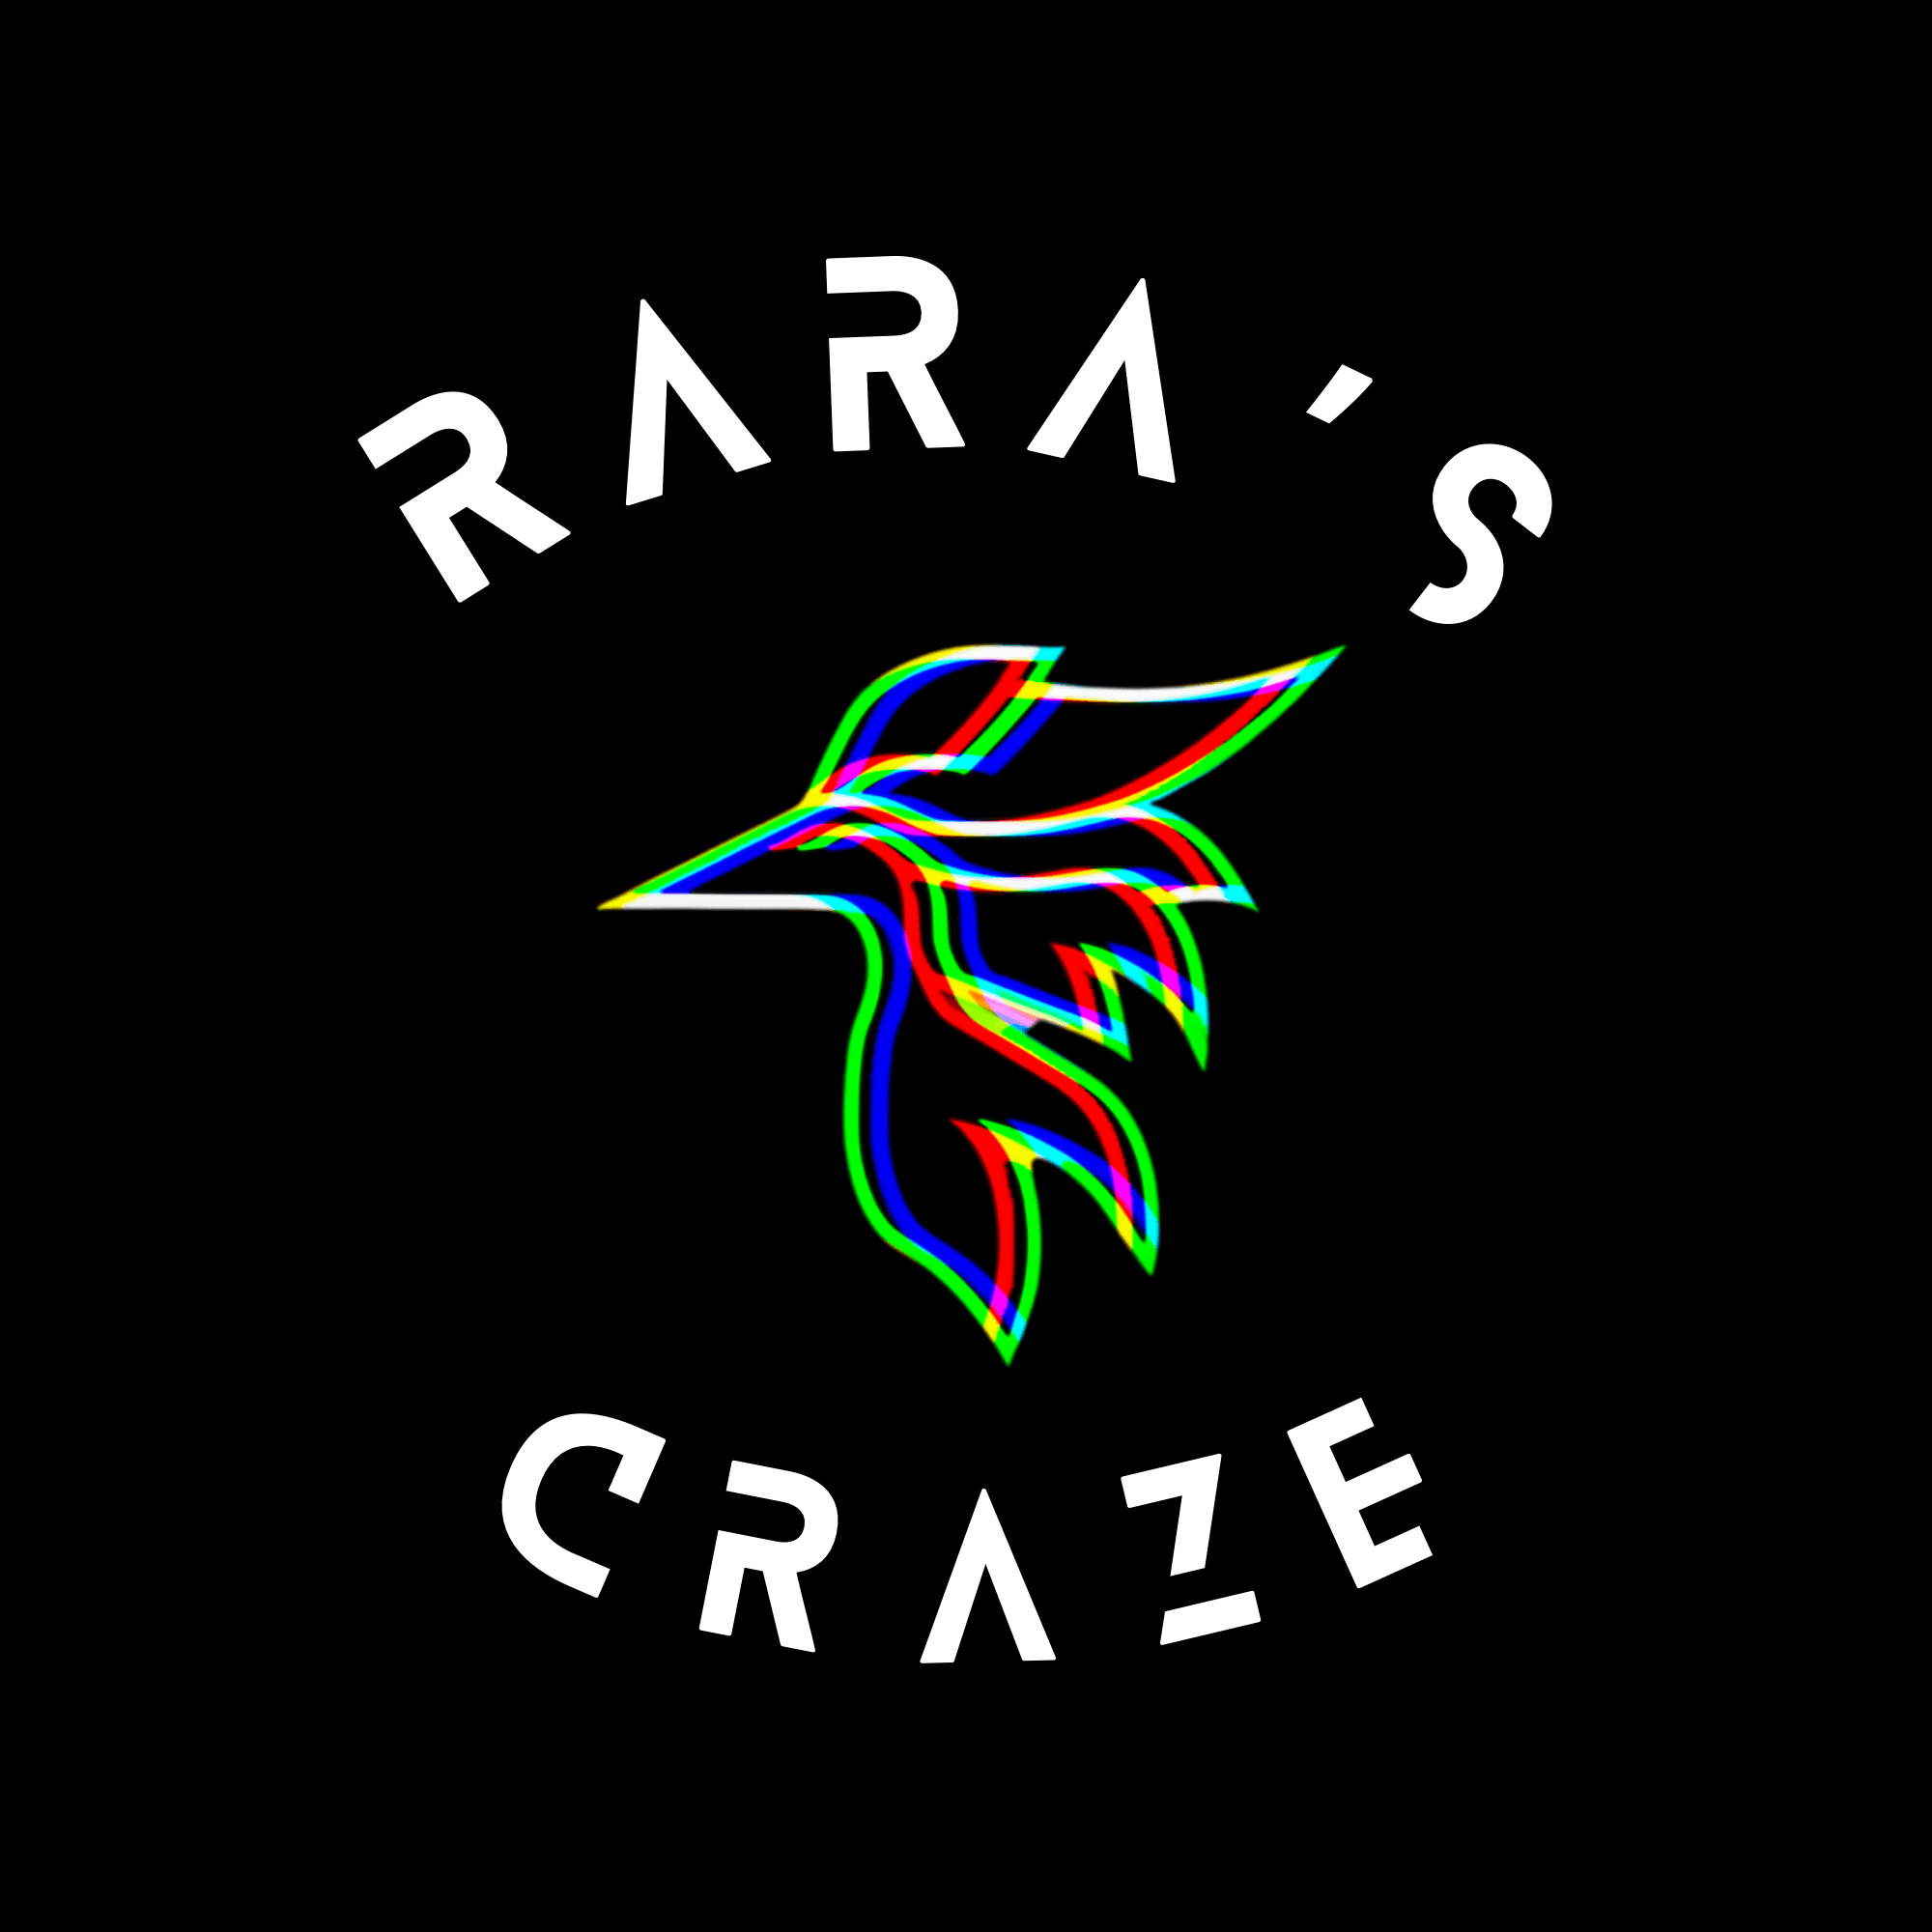 Rara’s craze